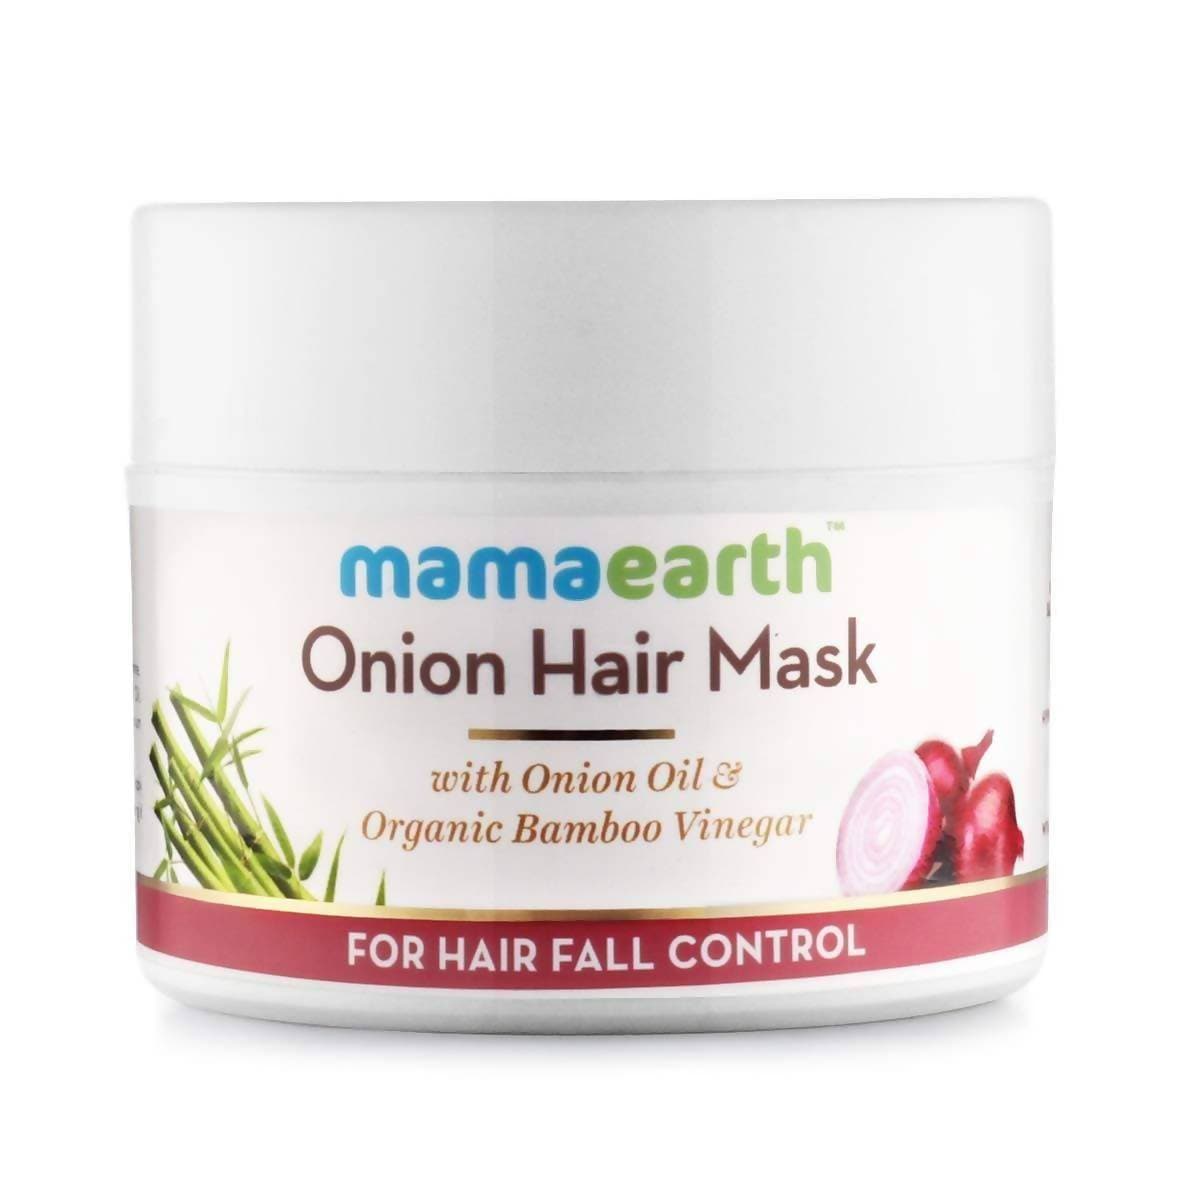 Mamaearth Onion Conditioner + Hair Mask + Hair Oil + Hair Serum For Hair Fall Control